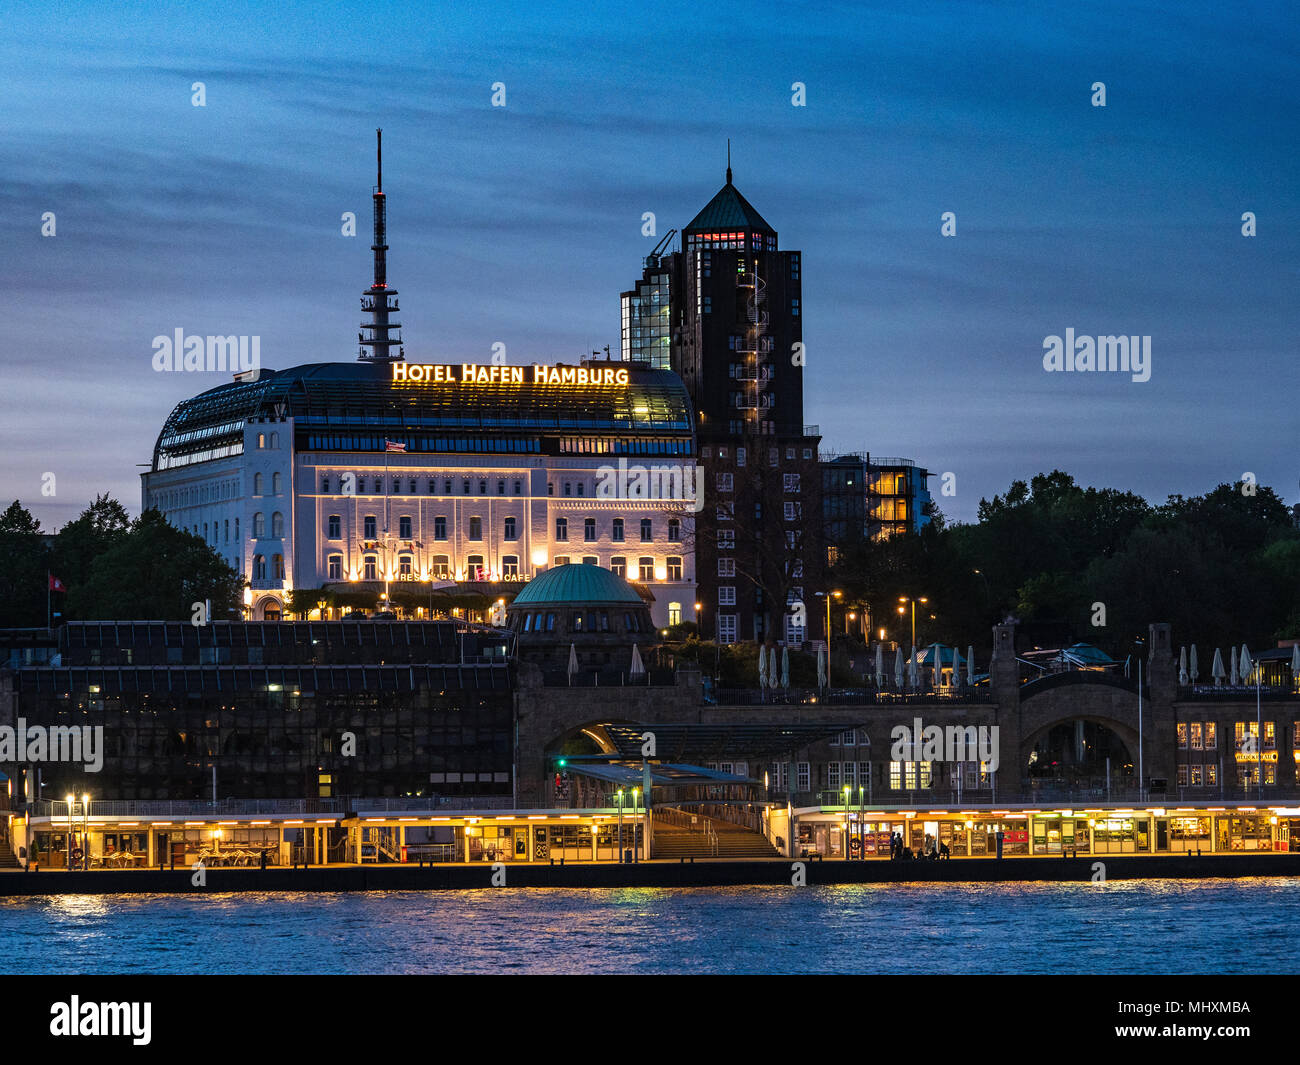 Hotel Hafen Hamburg Landungsbrücken Hambourg & dock - un quai flottant de 700 mètres de long sur l'Elbe dans le centre de Hambourg Banque D'Images